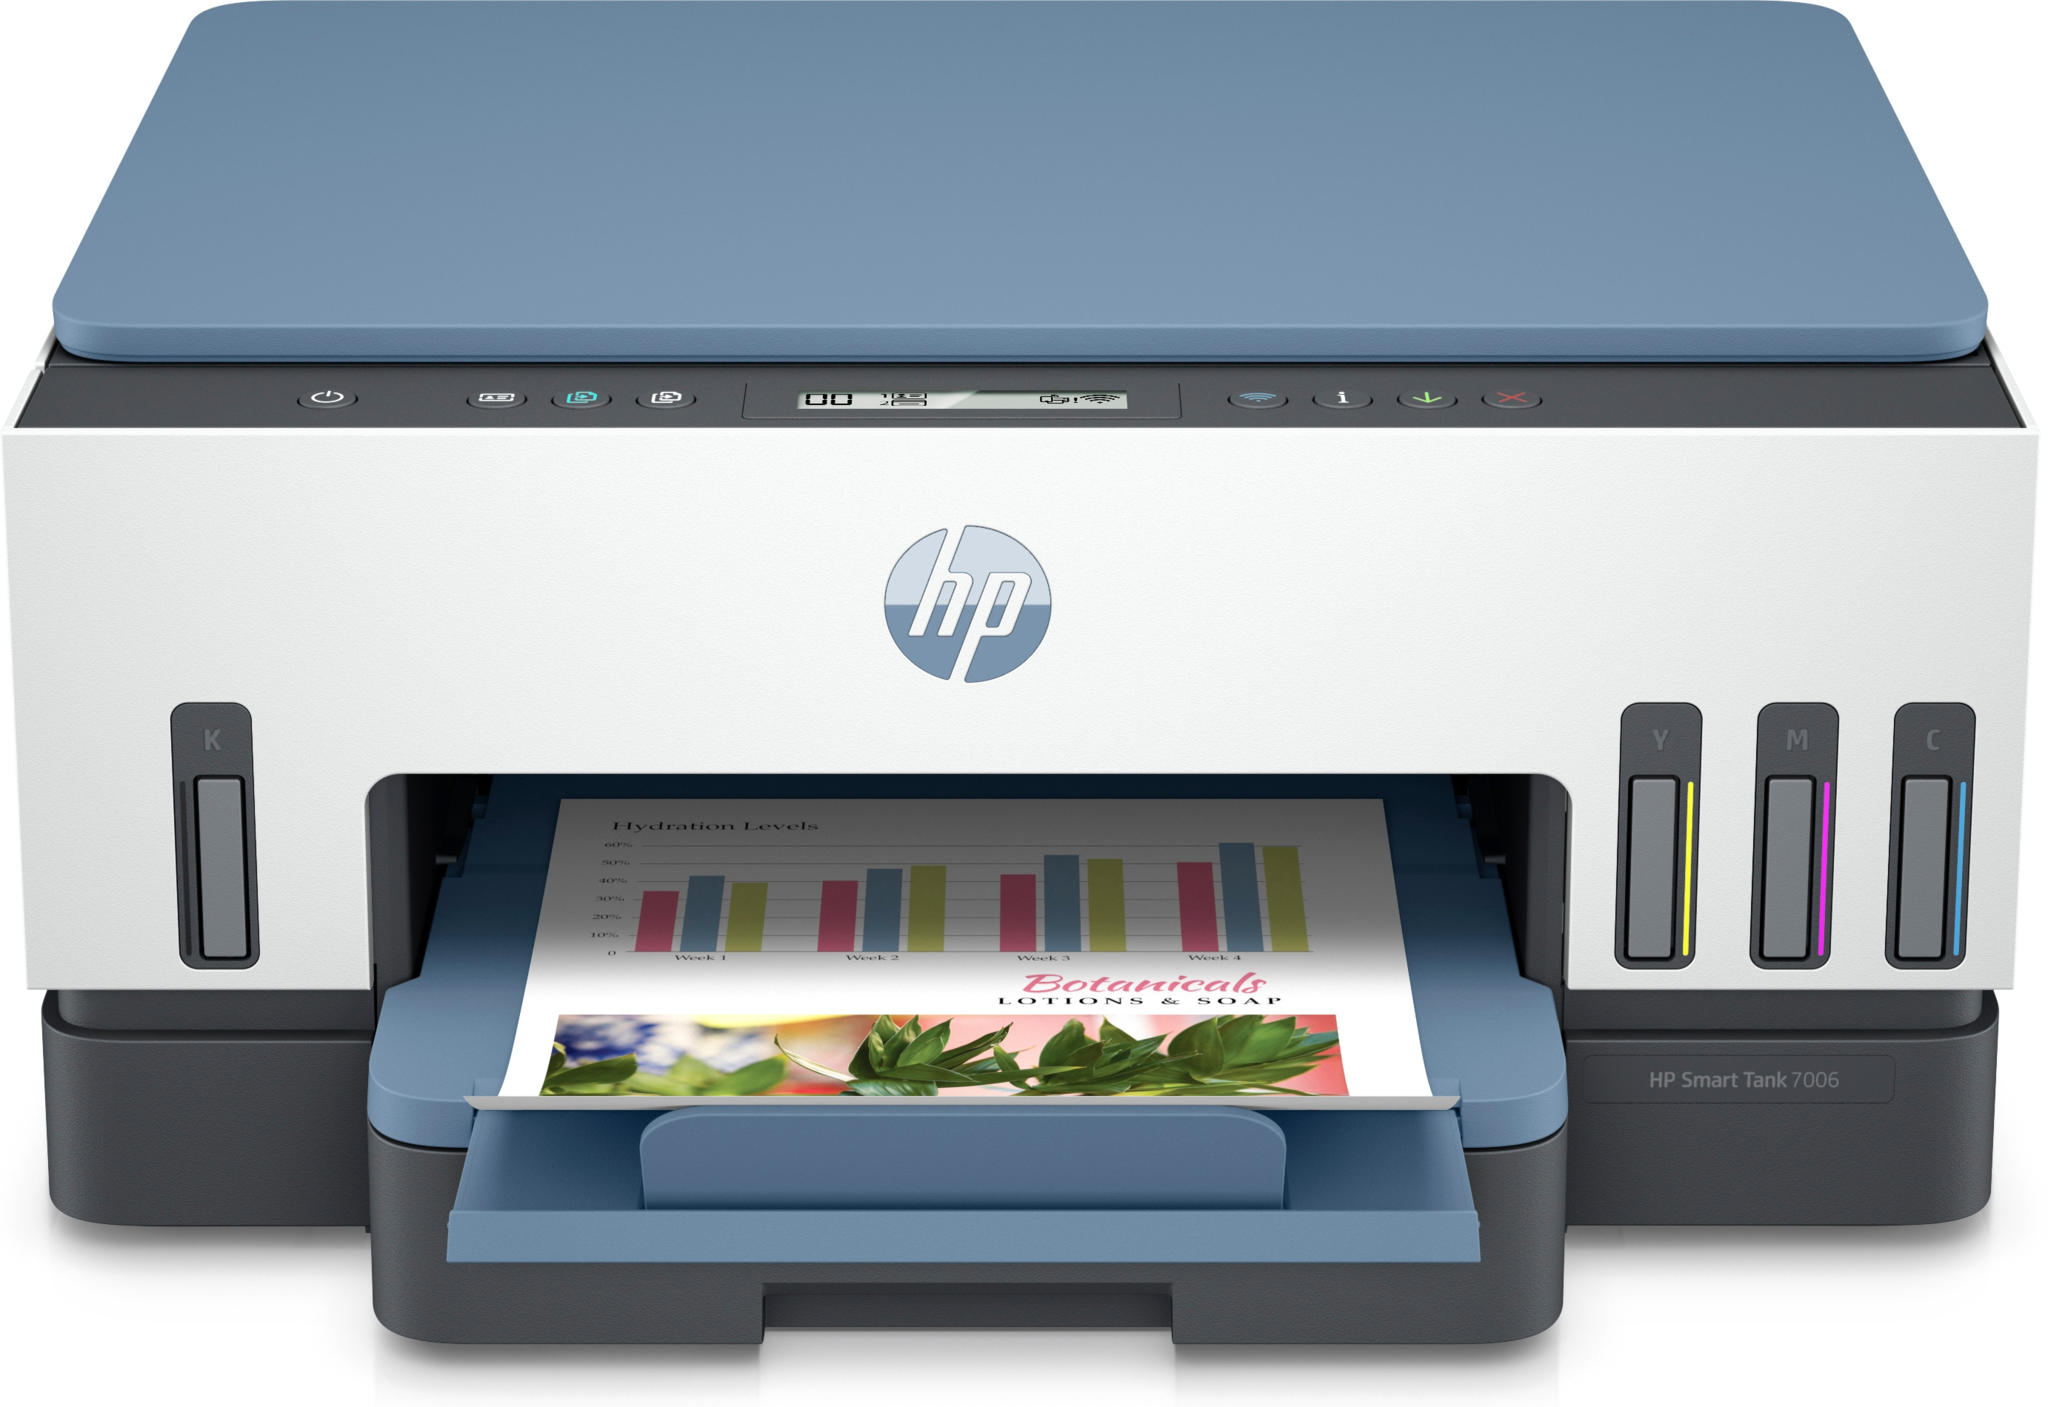 Aanbieding Printers. HP Smart Tank 7006 printer